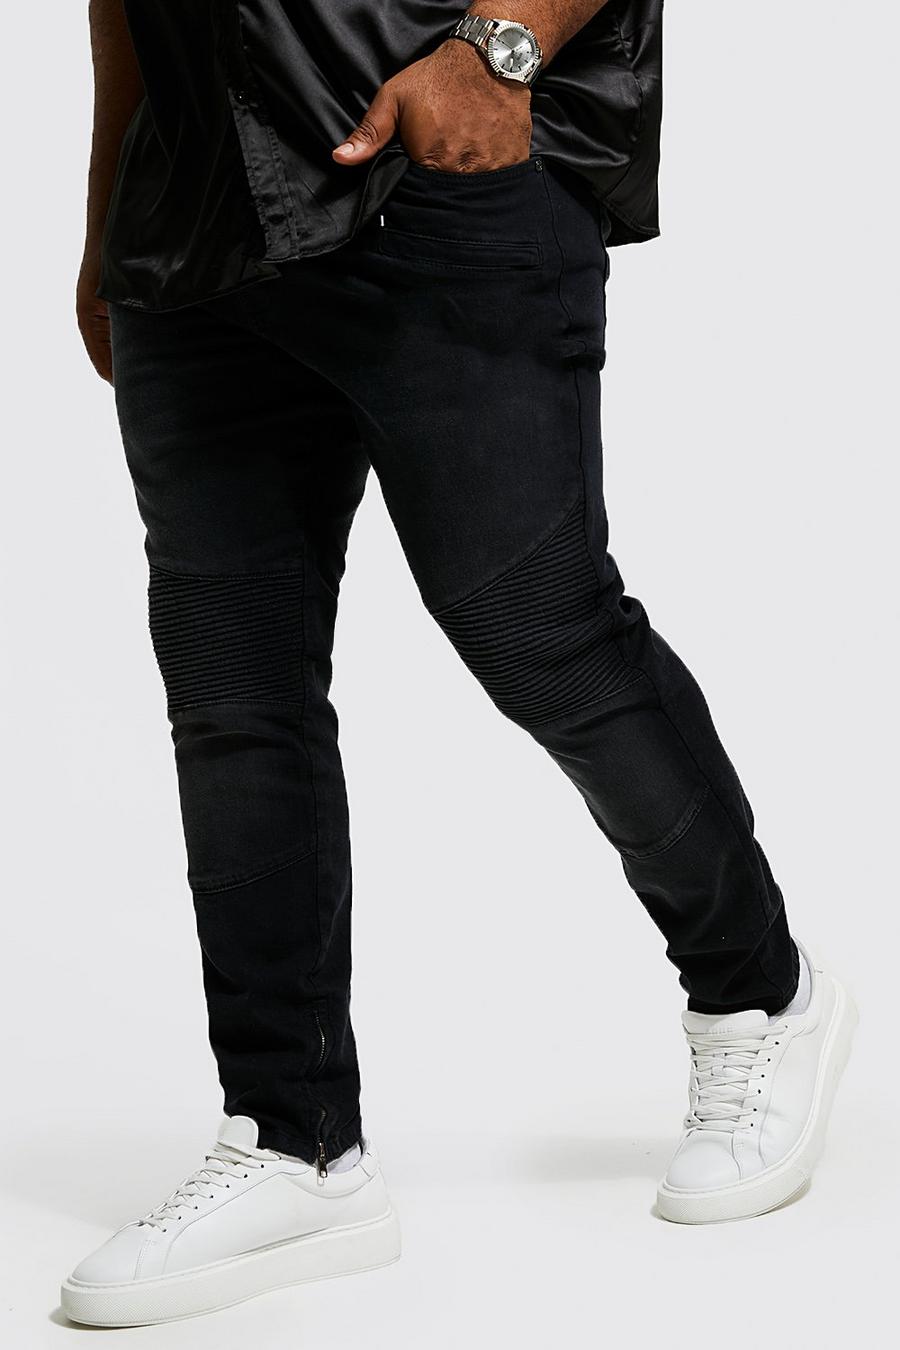 Jeans Plus Size Skinny Fit stile Biker con zip sul fondo, Black nero